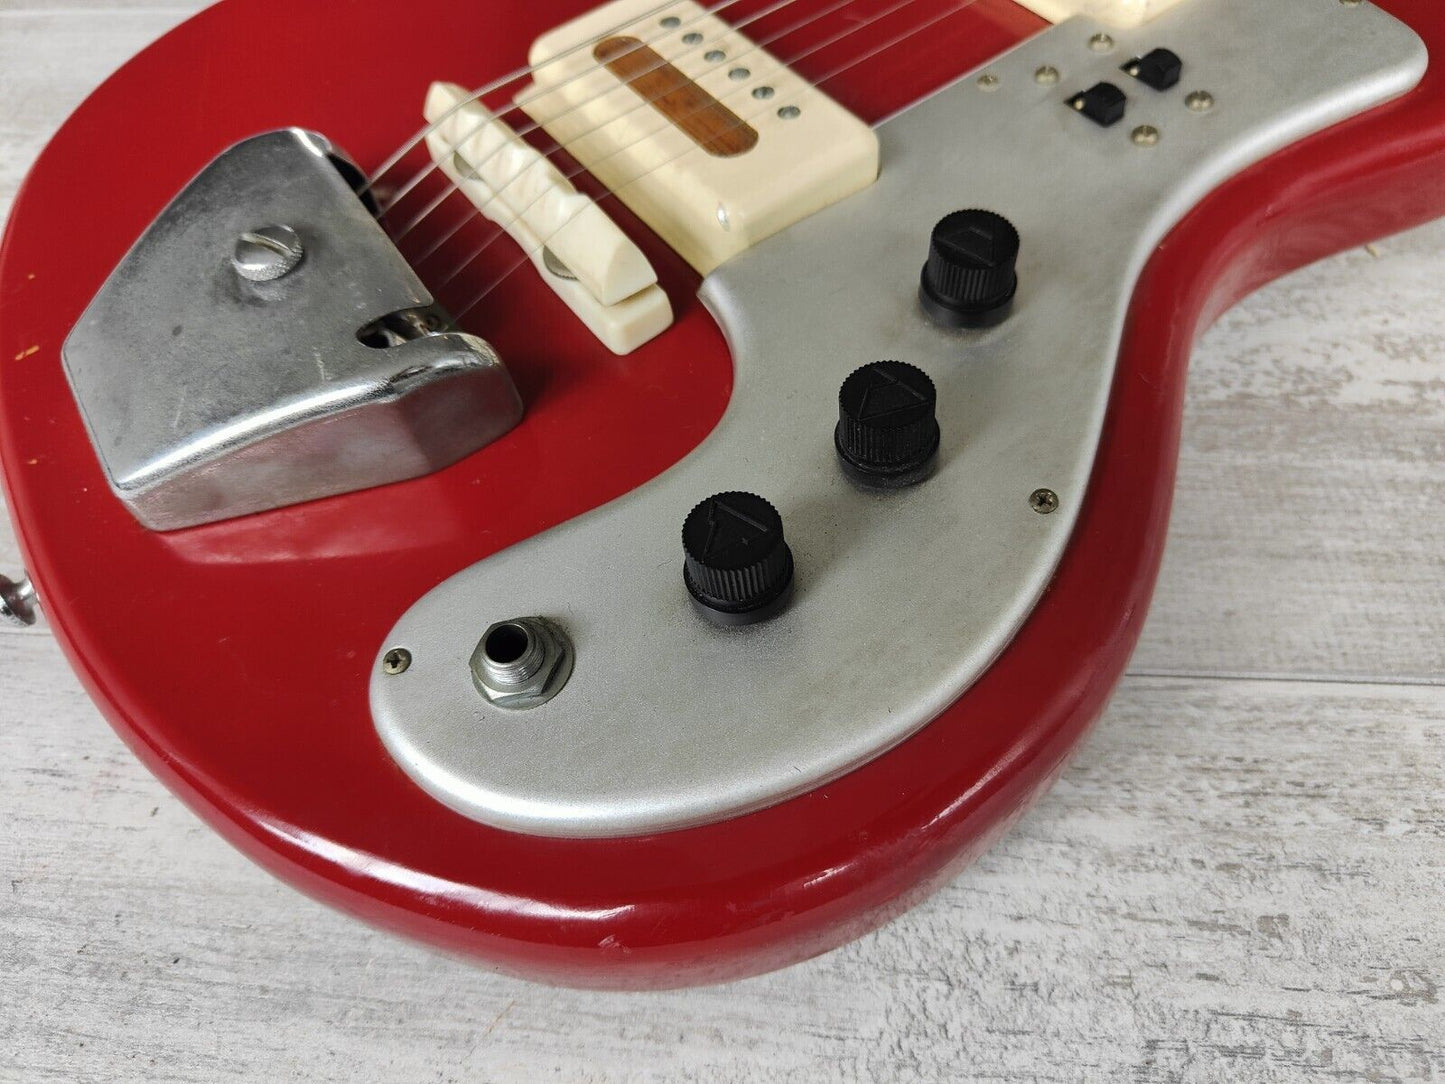 1960's Guyatone Japan LG-85T Electric Guitar (Dakota Red)